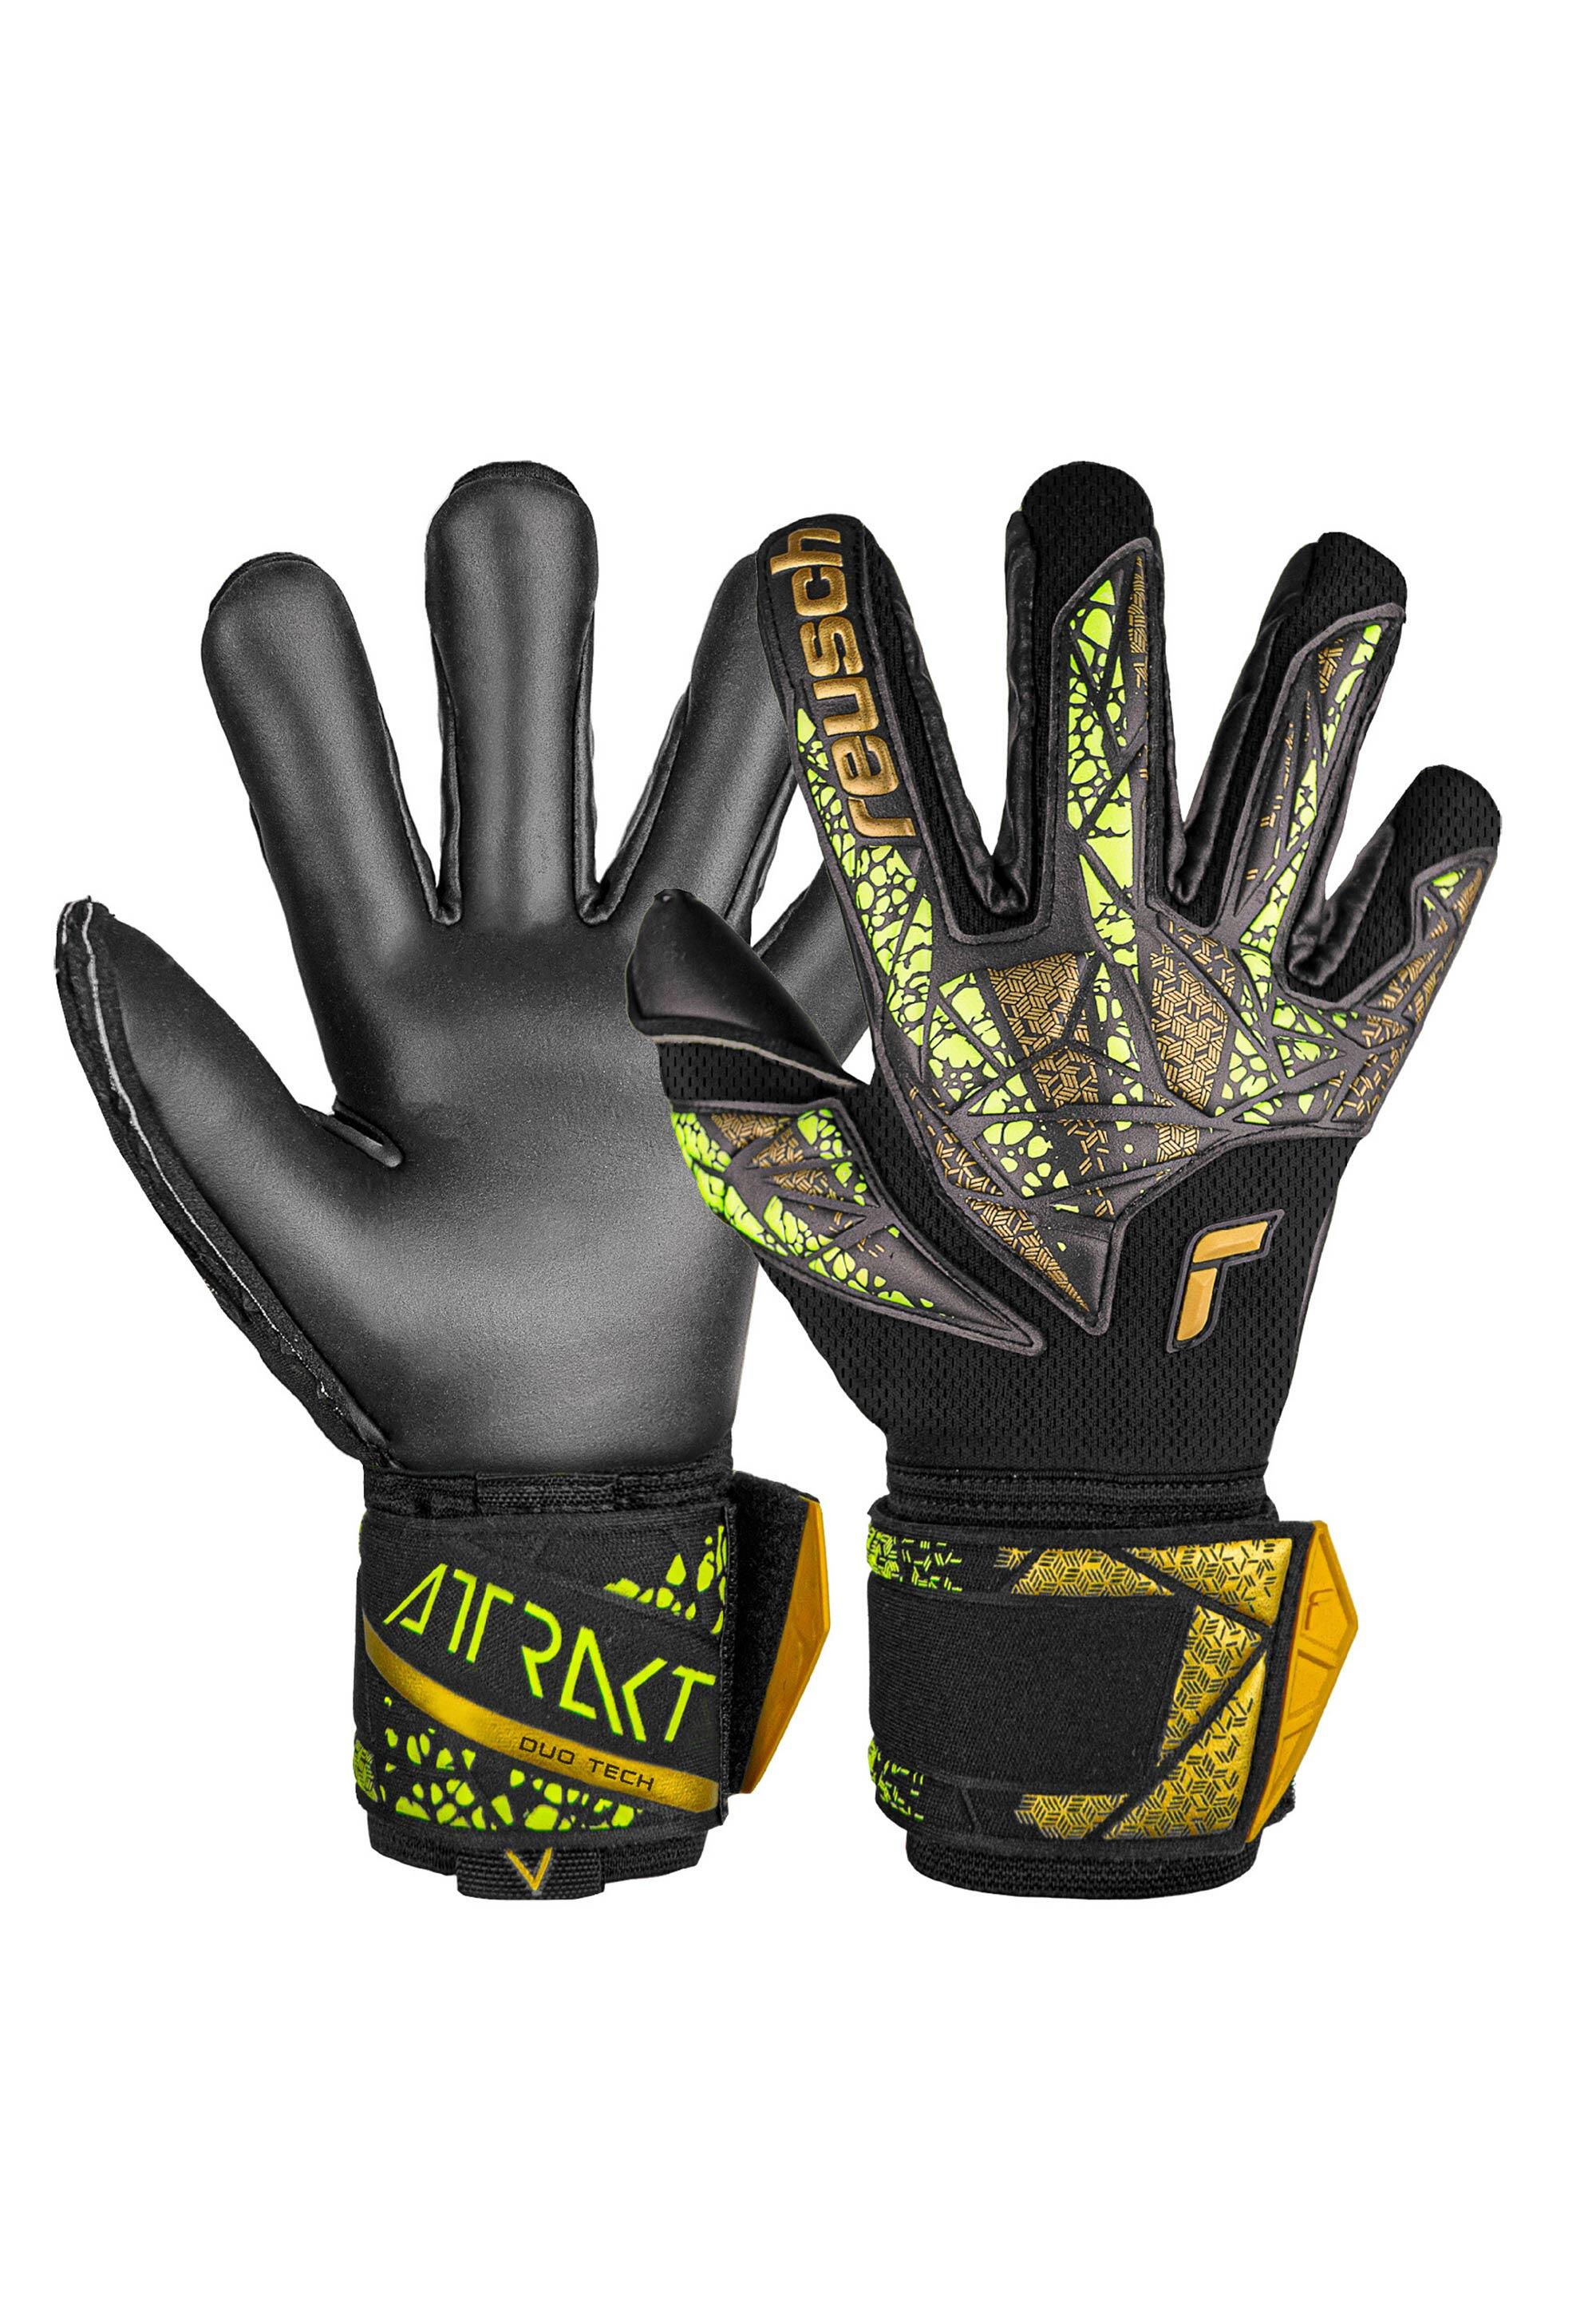 Reusch Attrakt Duo Finger Support   Goalkeeper Gloves 1/7